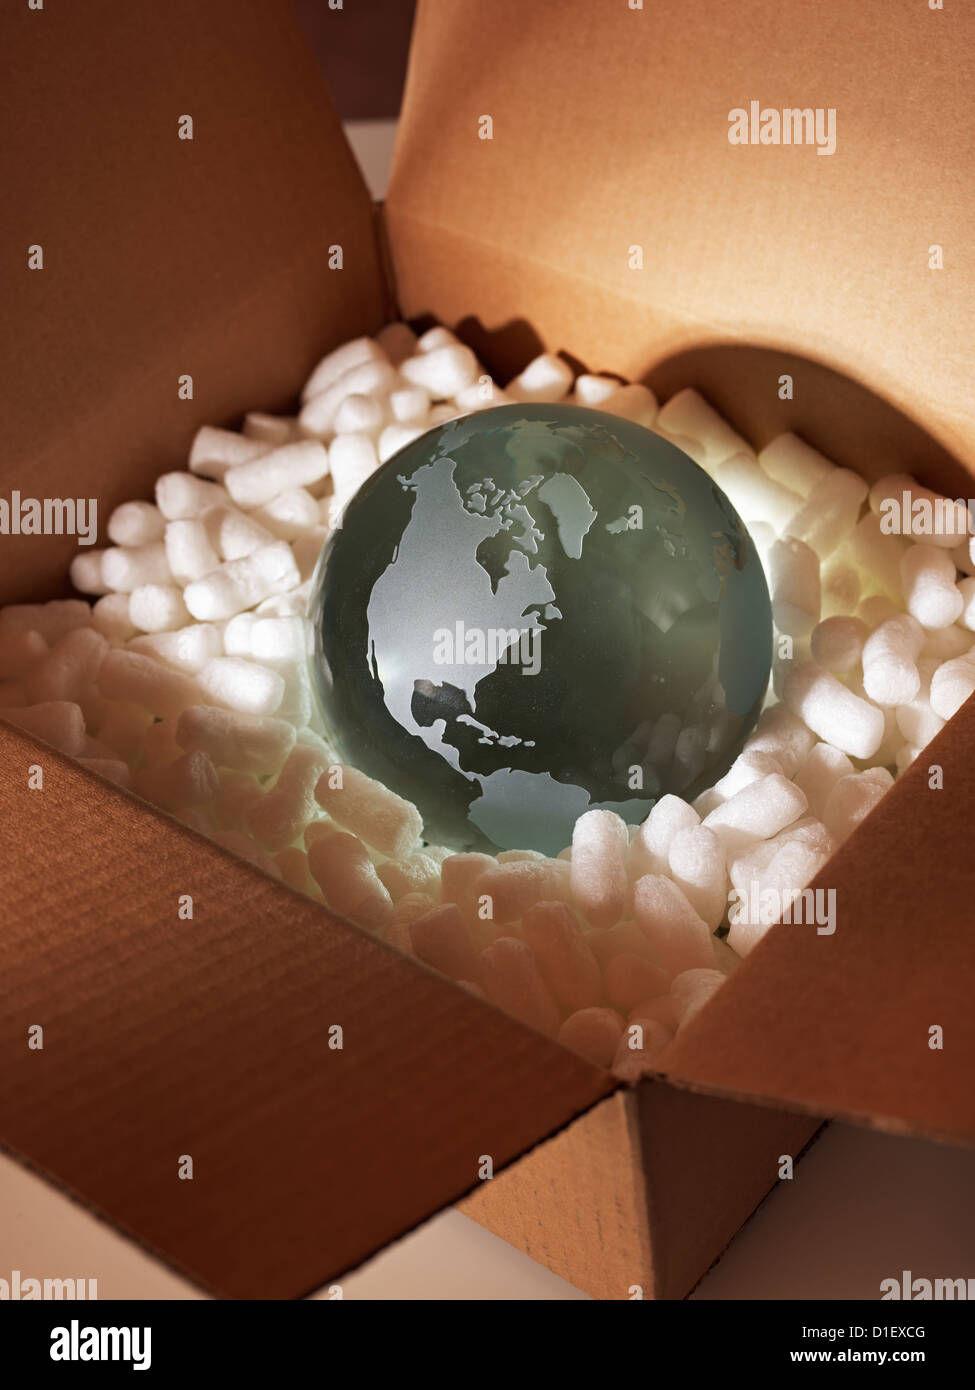 Globe de verre protégé par un emballage en polystyrène boîte marron Banque D'Images